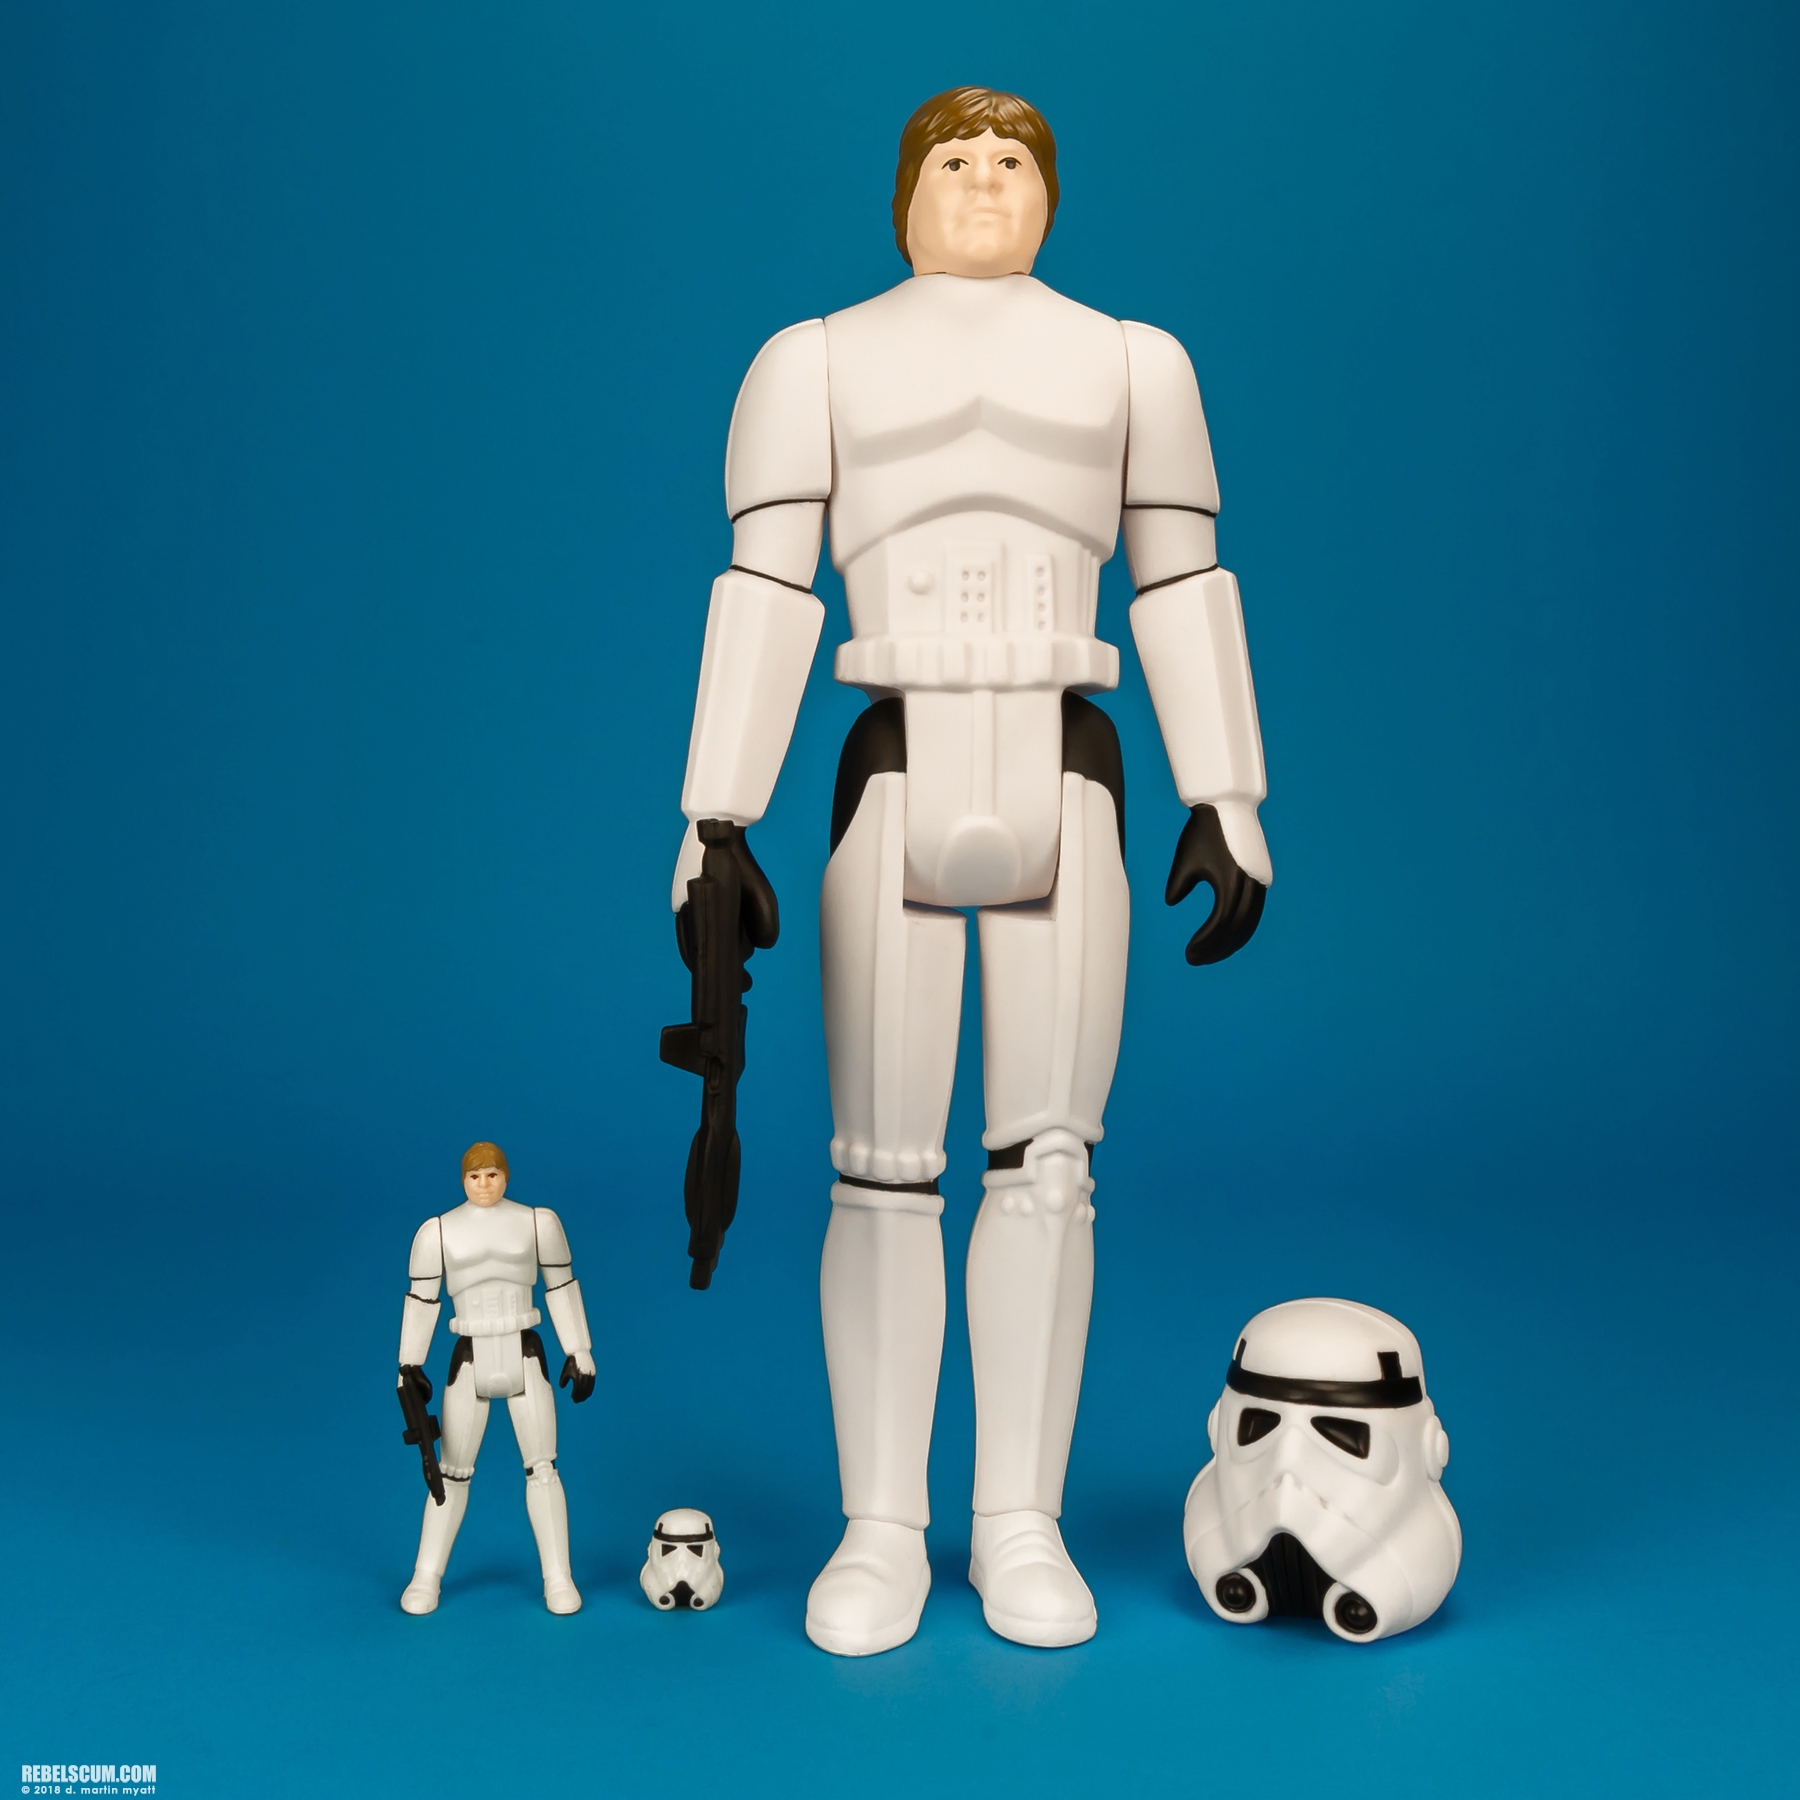 Luke-Skywalker-Stormtrooper-Disguise-Jumbo-Kenner-Gentle-Giant-010.jpg